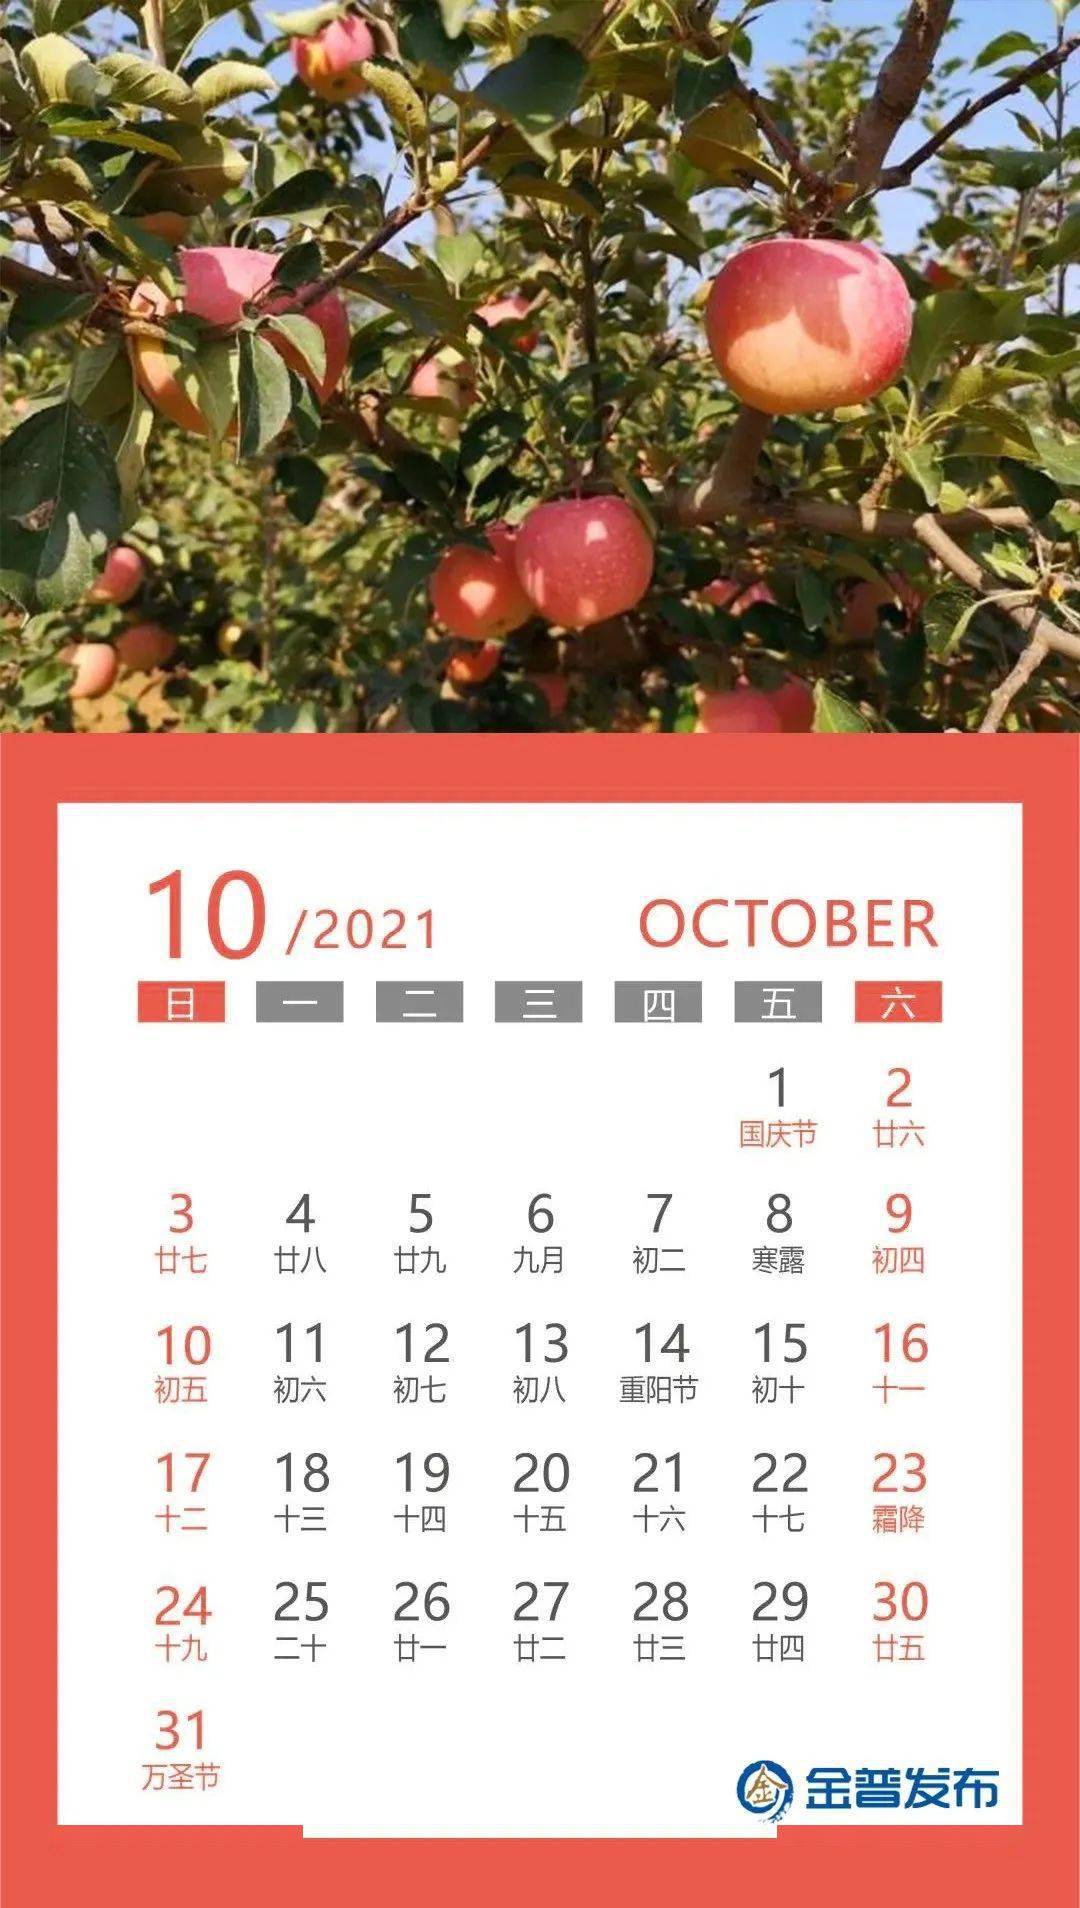 小布送您一份2021年新区专属日历,请查收!